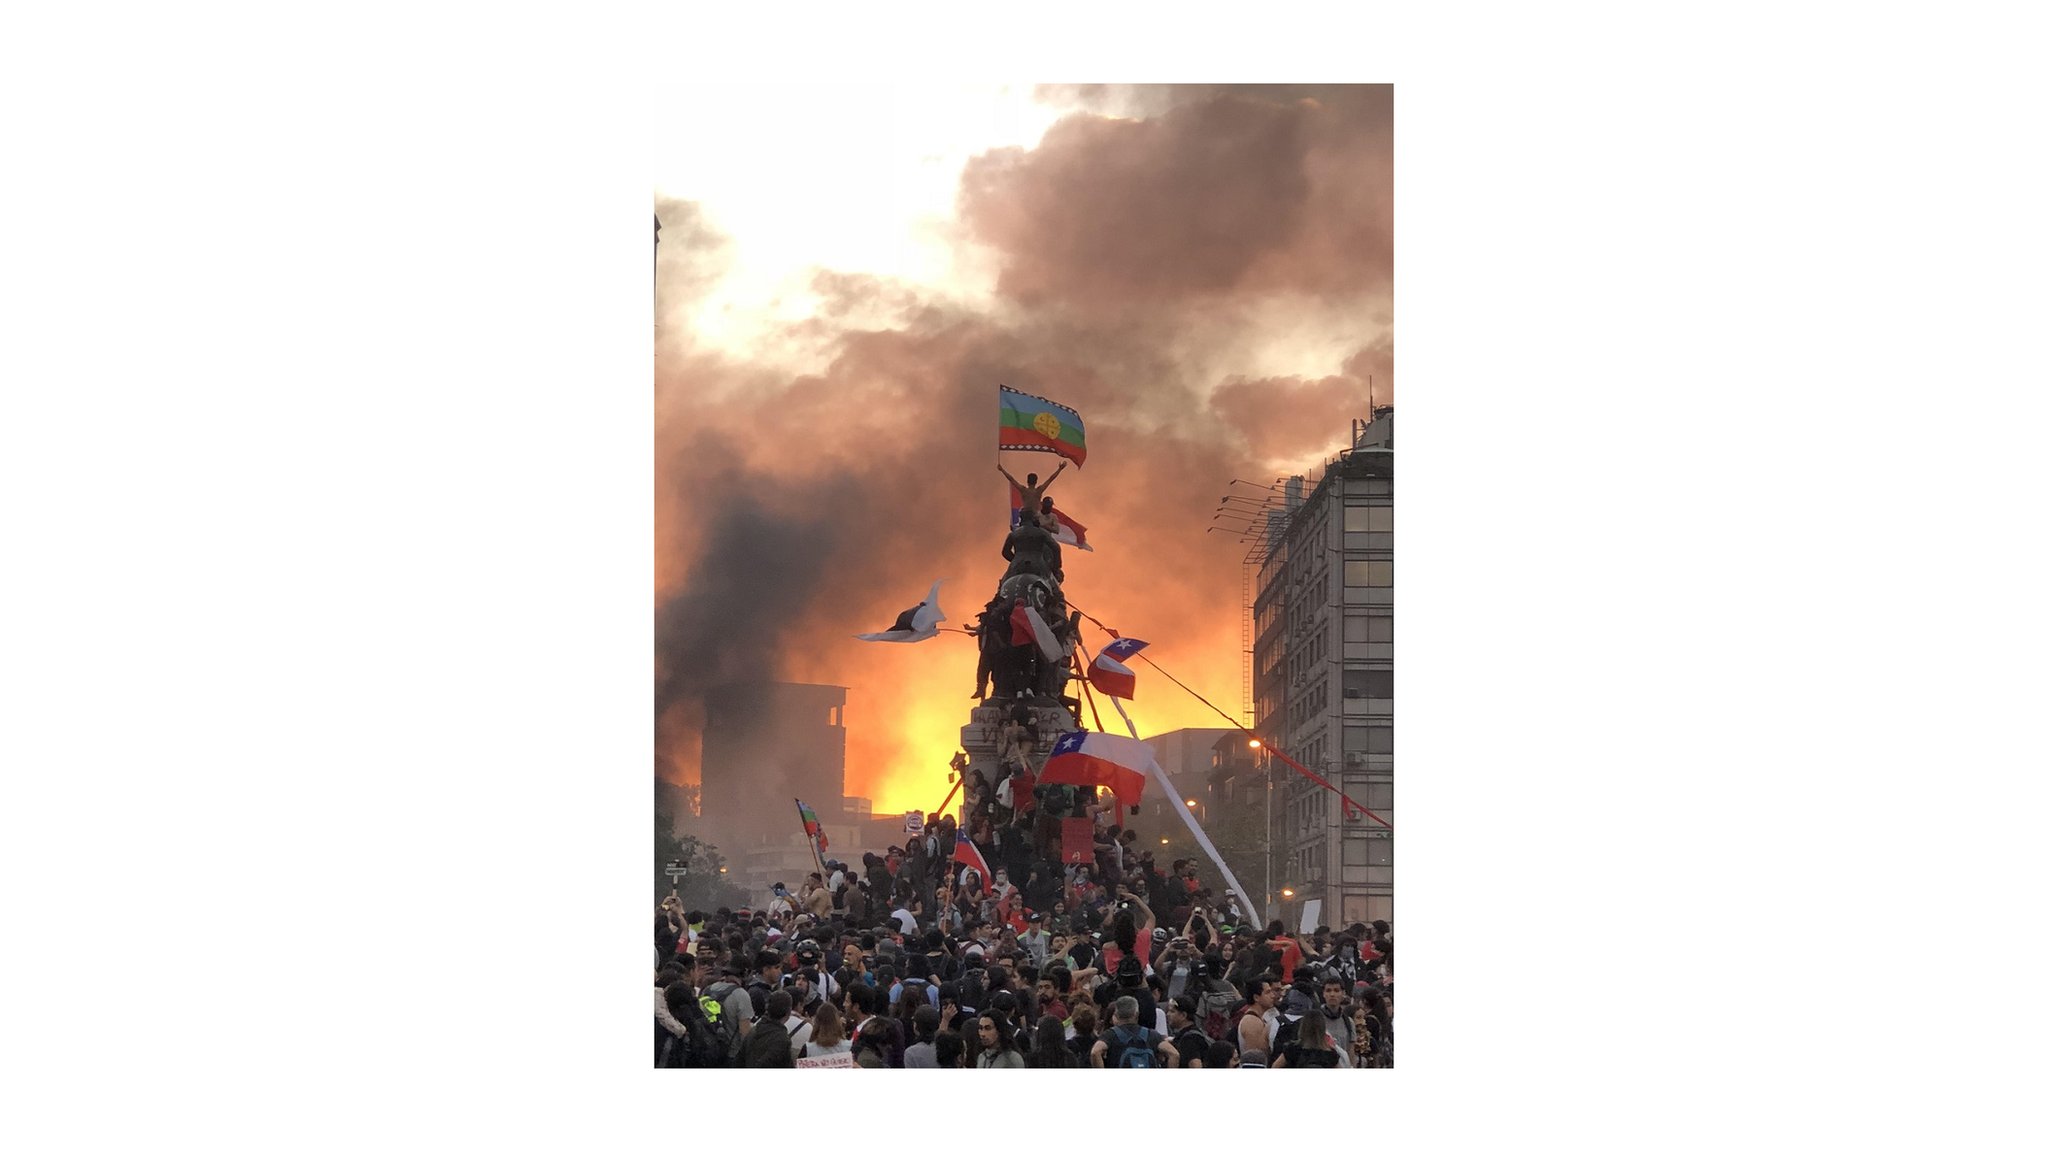 La imagen de un manifestante flameando la bandera mapuche en la cima de una estatua militar, en Santiago